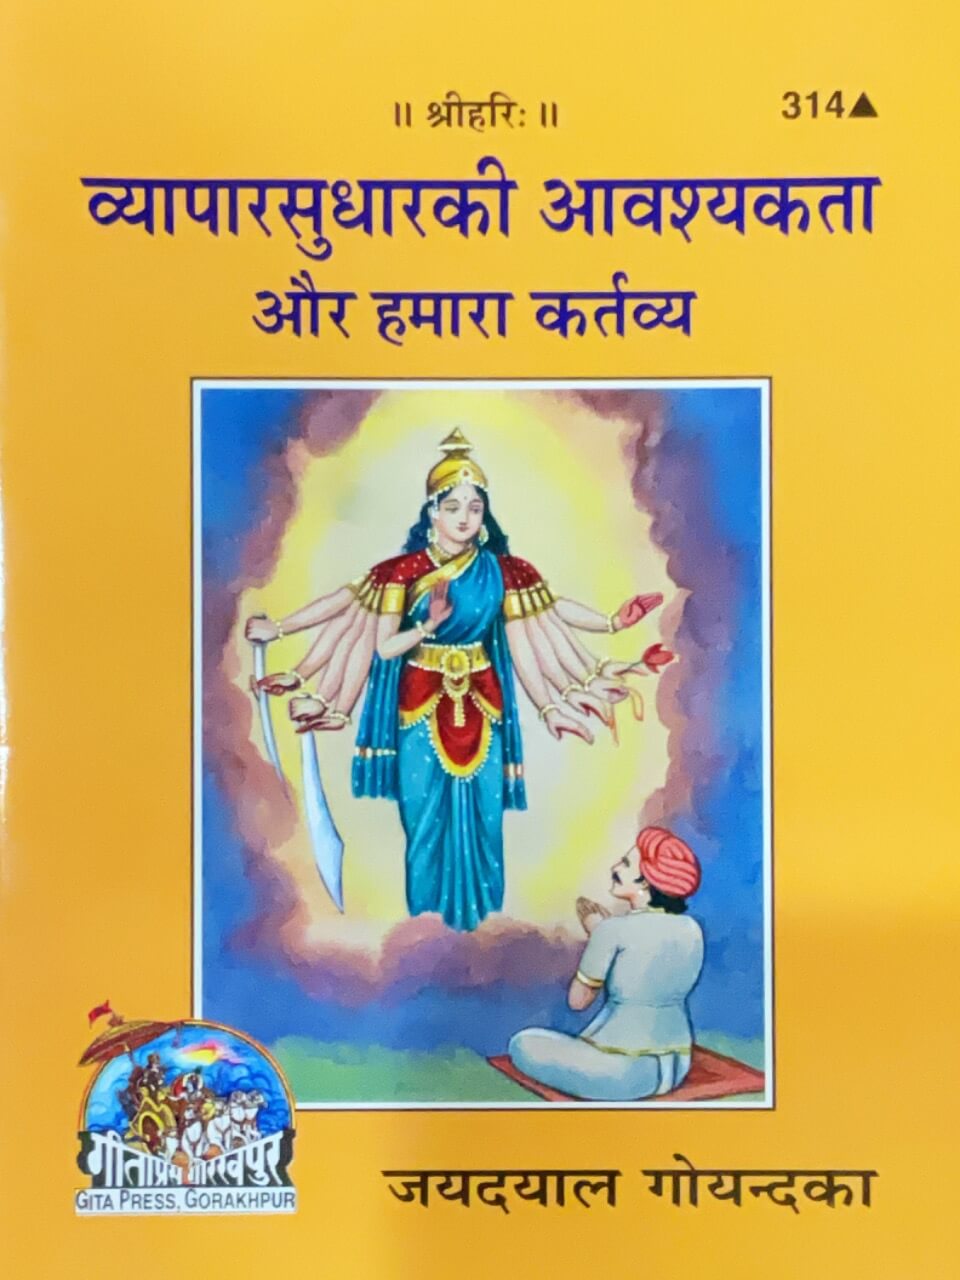 SANATAN  Byaparasudhara Ki Avashyakta Aur hamara kartavya by Gita Press